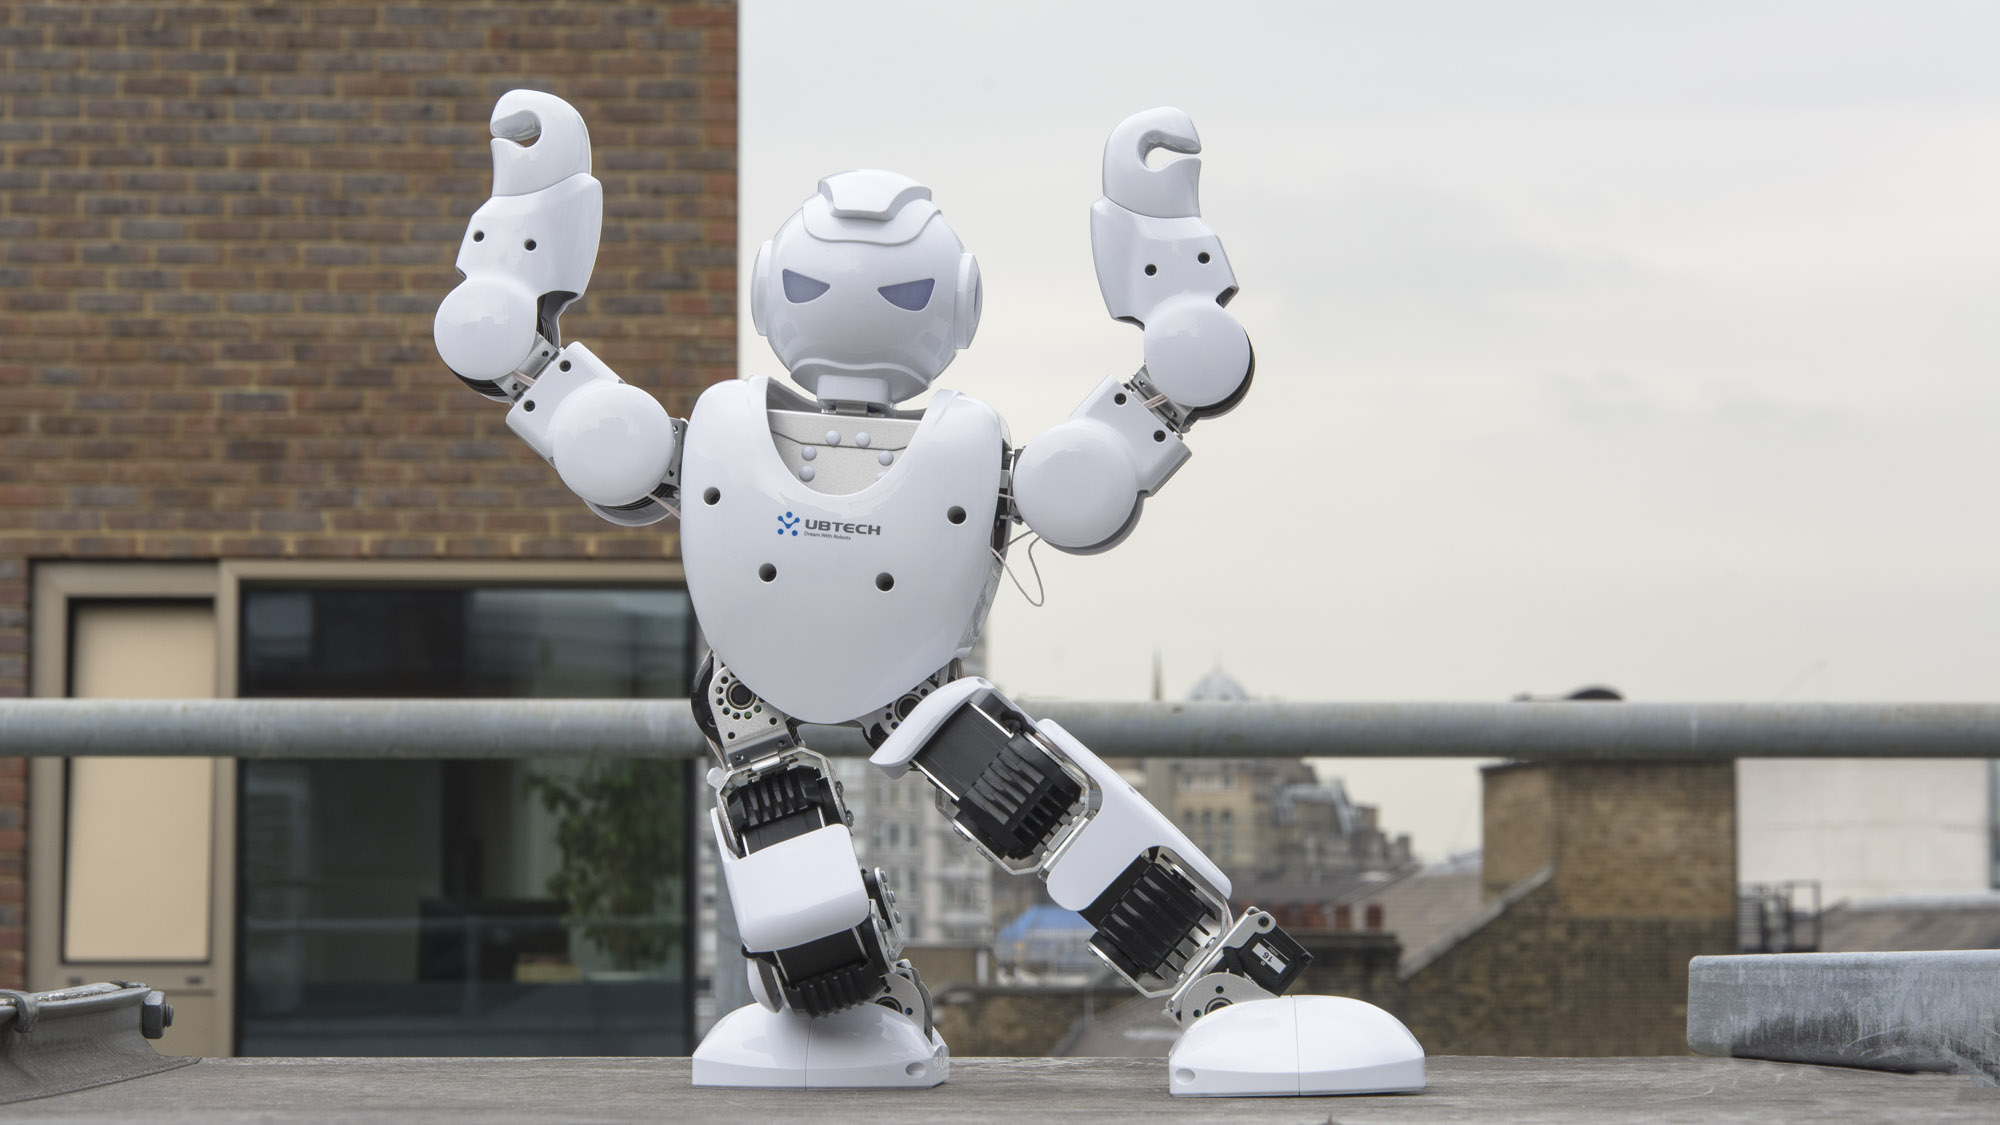 Огляд UBTech Alpha 1S: робот за 400 фунтів стерлінгів, який буквально співає та танцює